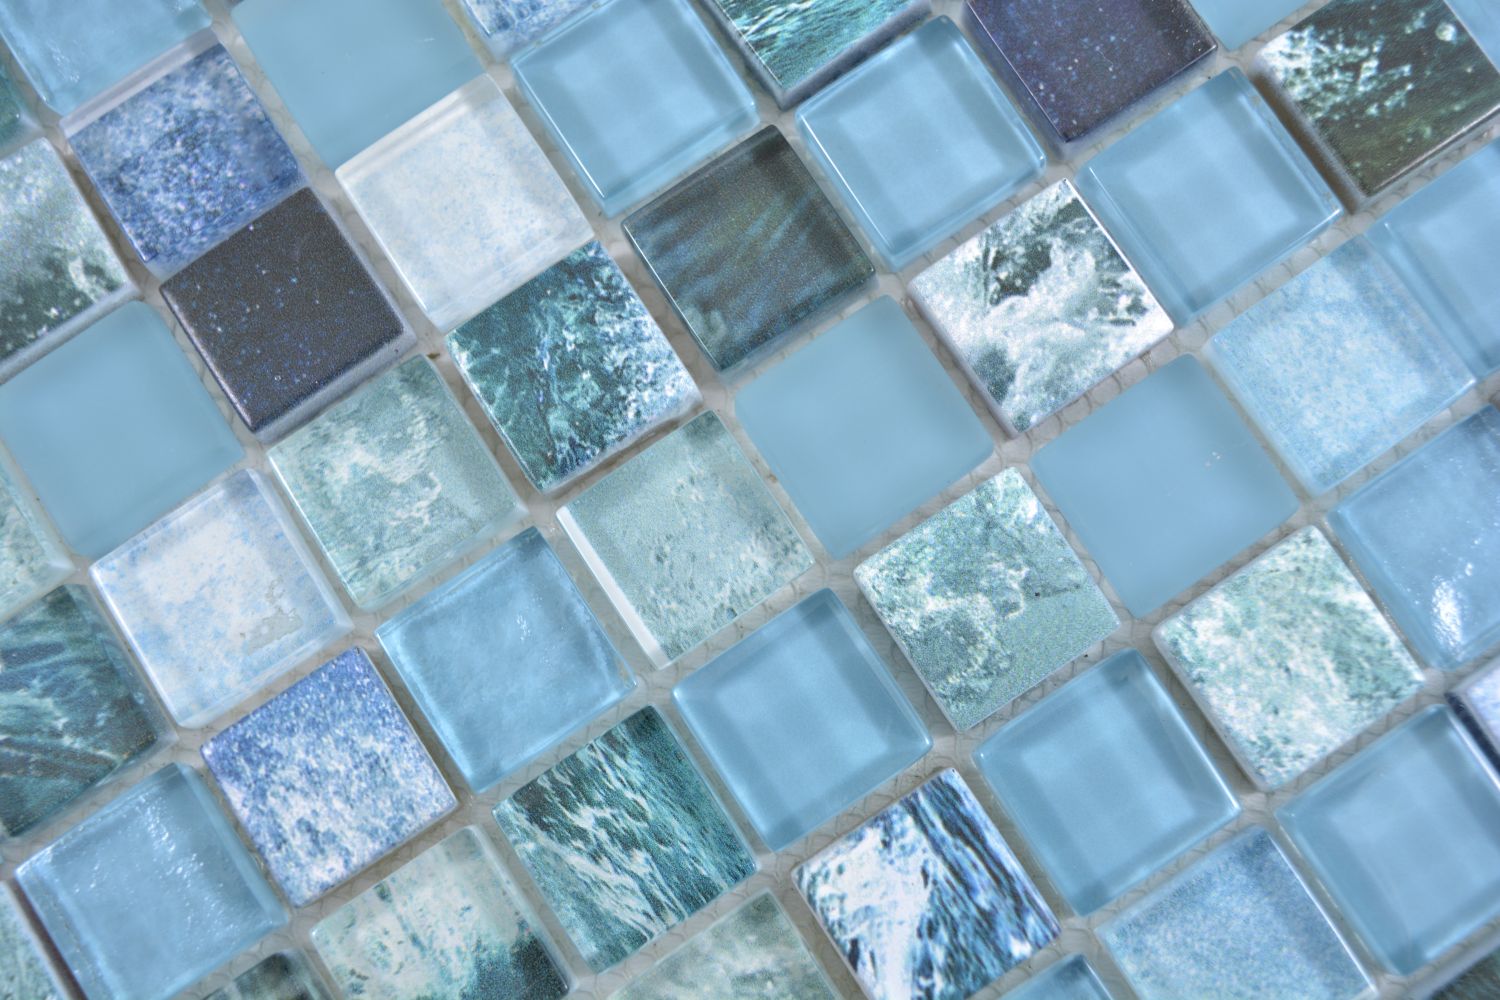 64-0409_f1qm Glasmosaik blau türkis Mosaikfliese in 25x25x4mm Bad Dusche Art 